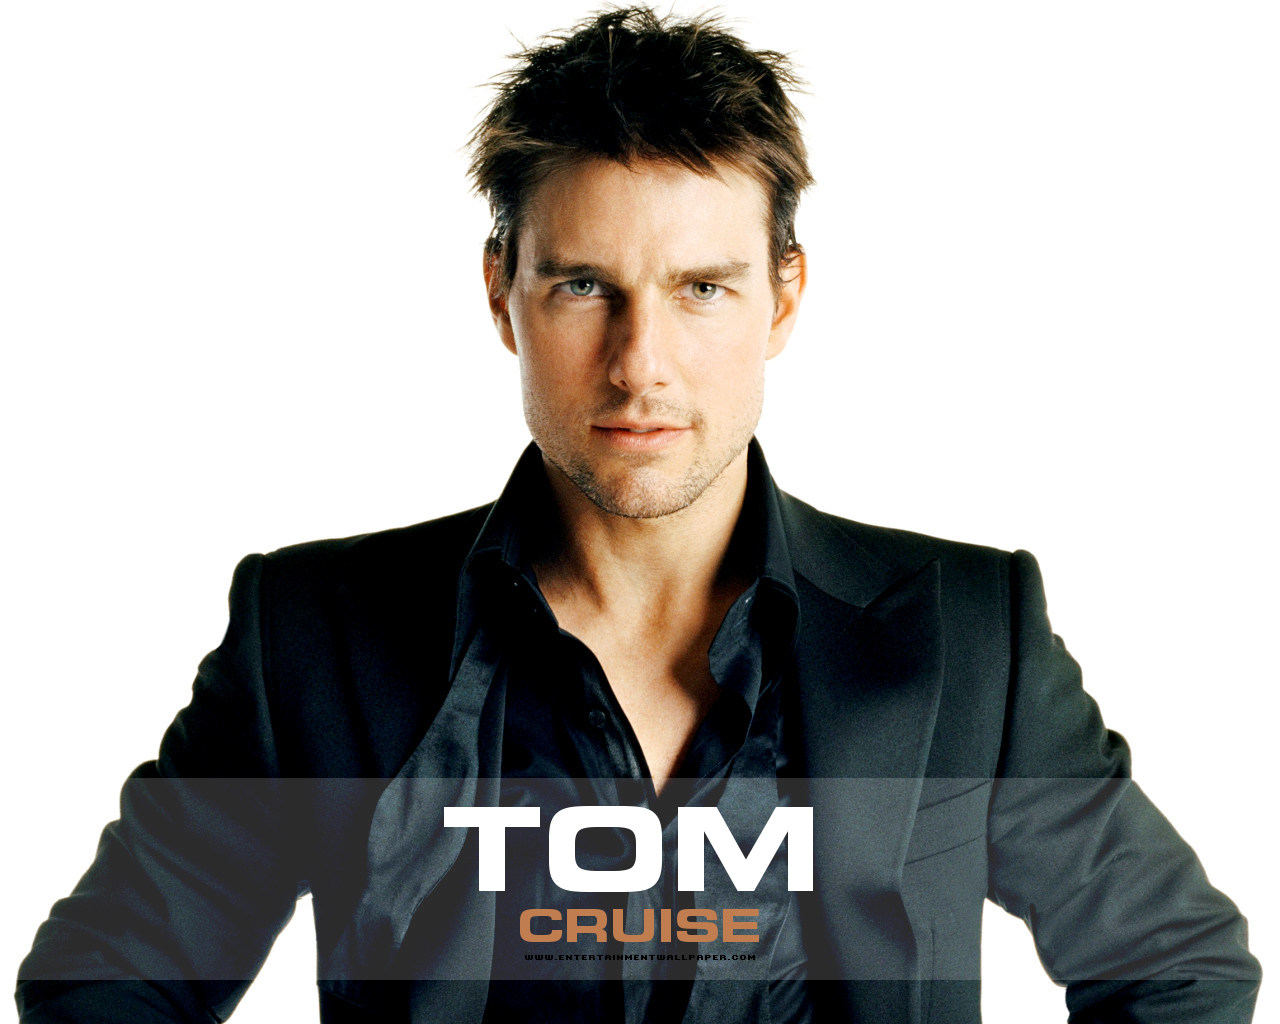 tom cruise wallpaper,fronte,acconciatura,capelli neri,impiegato,fotografia